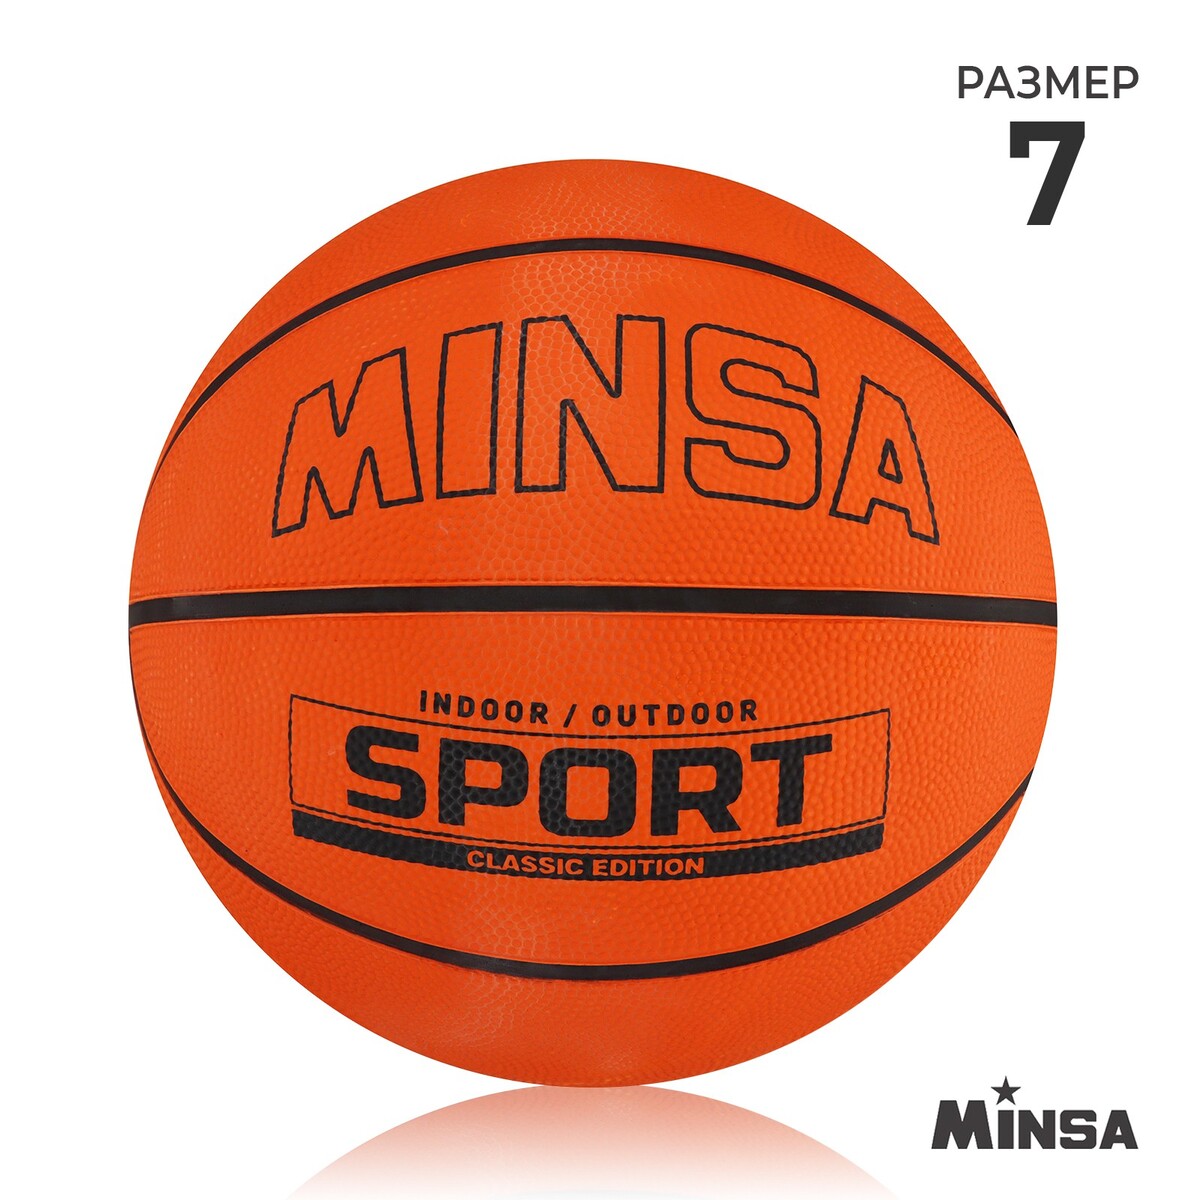 Мяч баскетбольный minsa sport, пвх, клееный, 8 панелей, р. 7 баскетбольный мяч minsa тренировочный pu клееный 8 панелей р 6